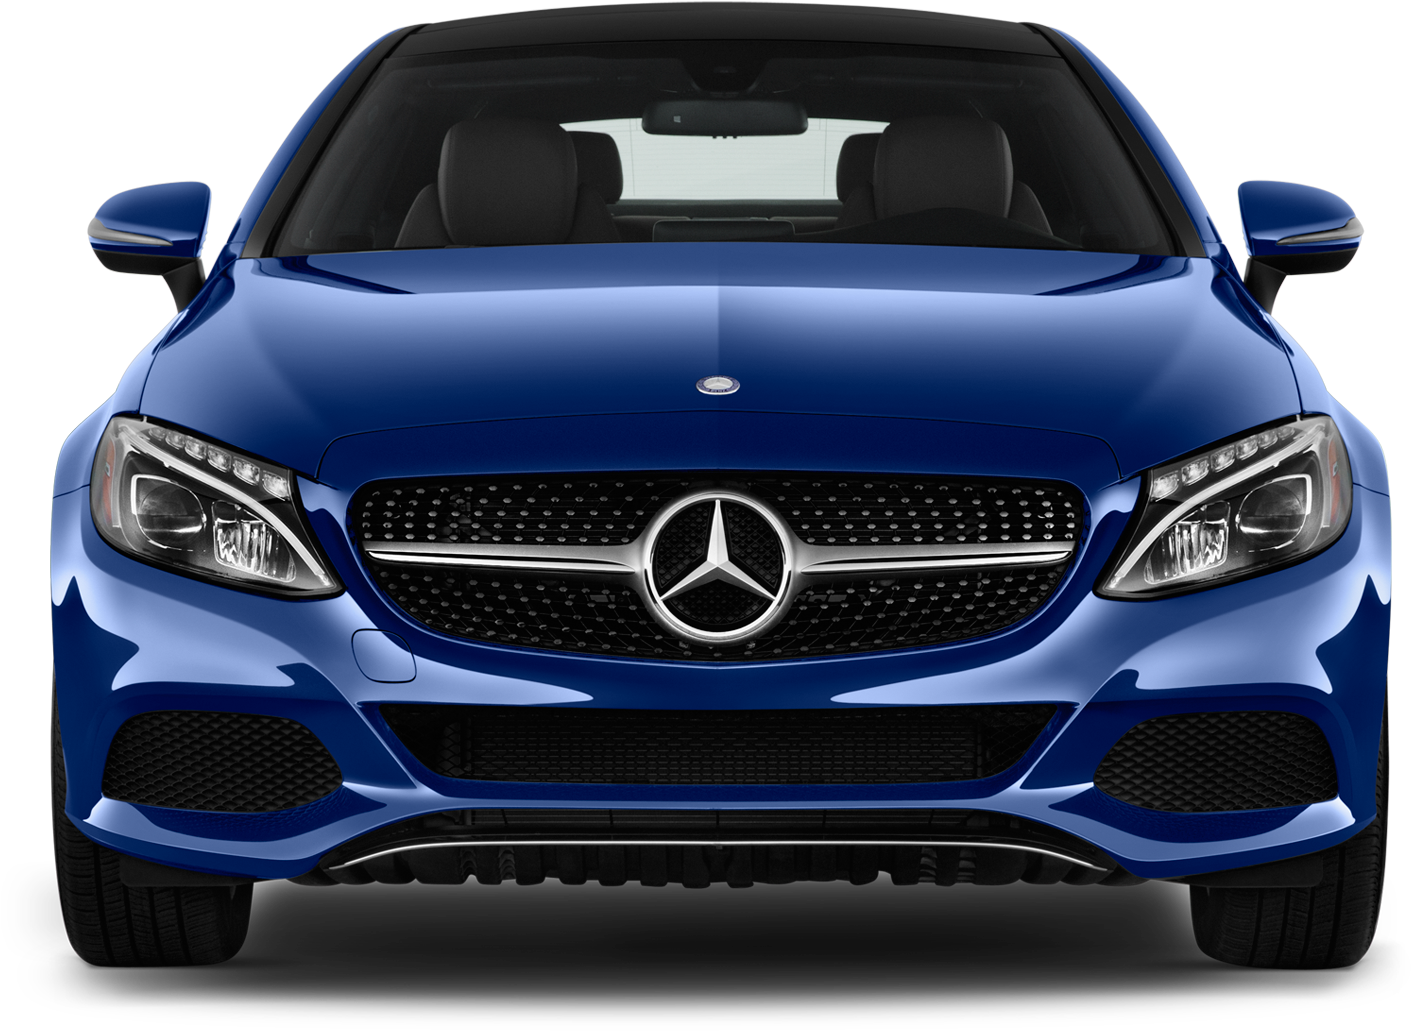 Mercedes Benz Png File - Mercedes Benz C Class 2018 Png (2048x1360), Png Download